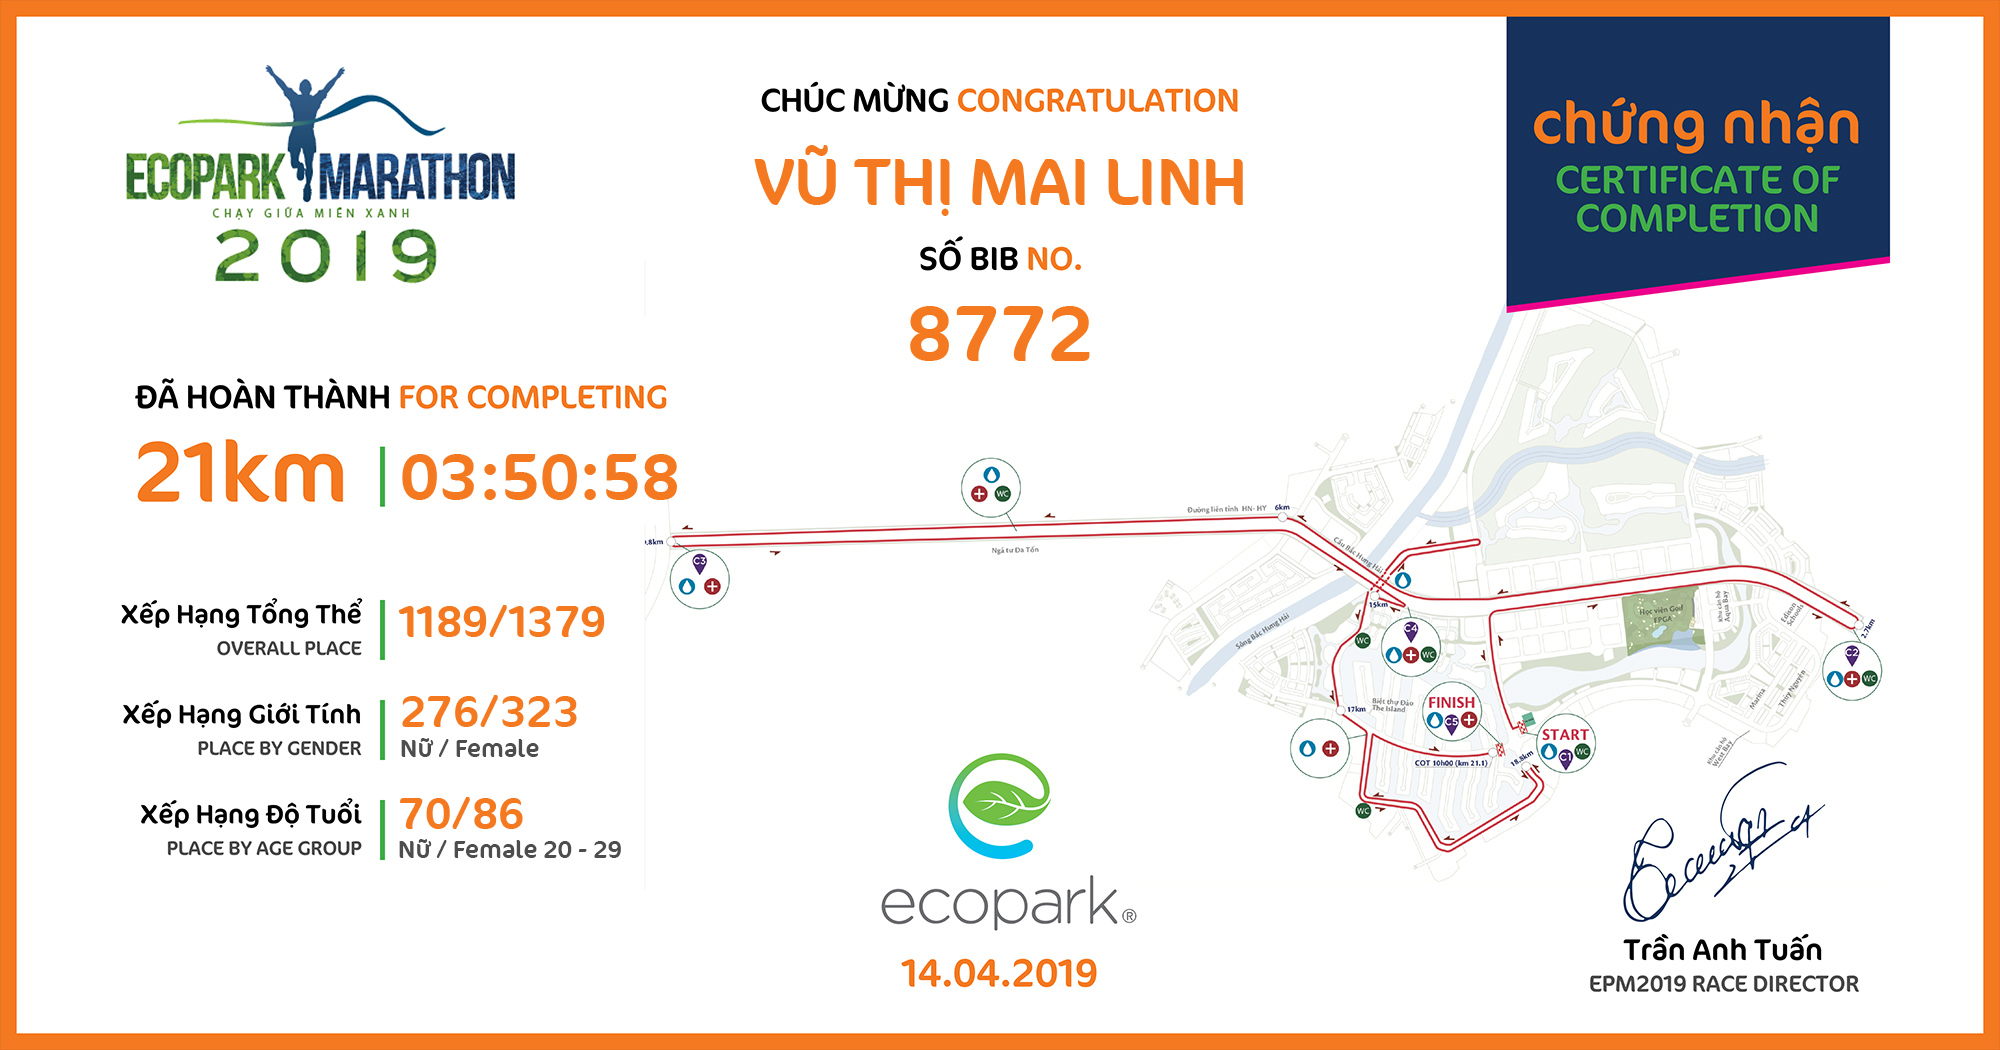 8772 - Vũ Thị Mai Linh